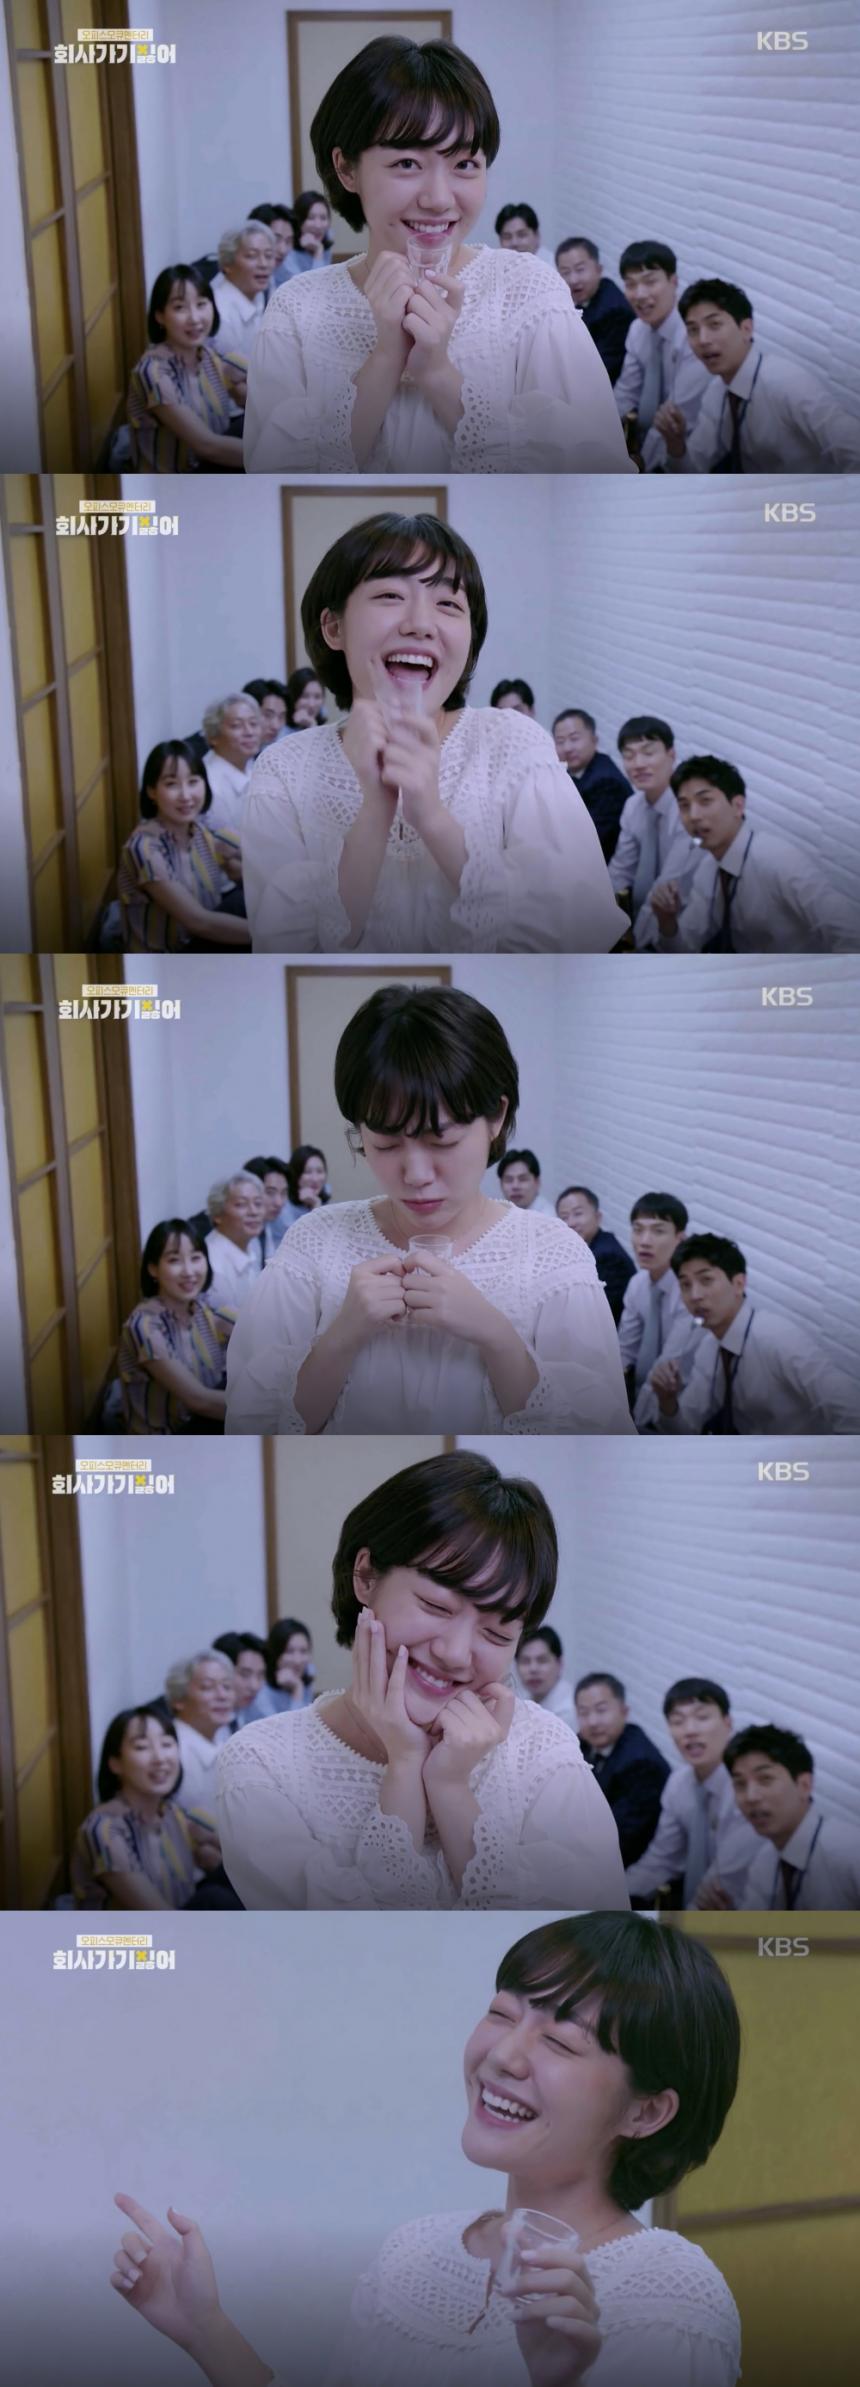 KBS2 모큐멘터리 ‘회사 가기 싫어’ 방송 캡처